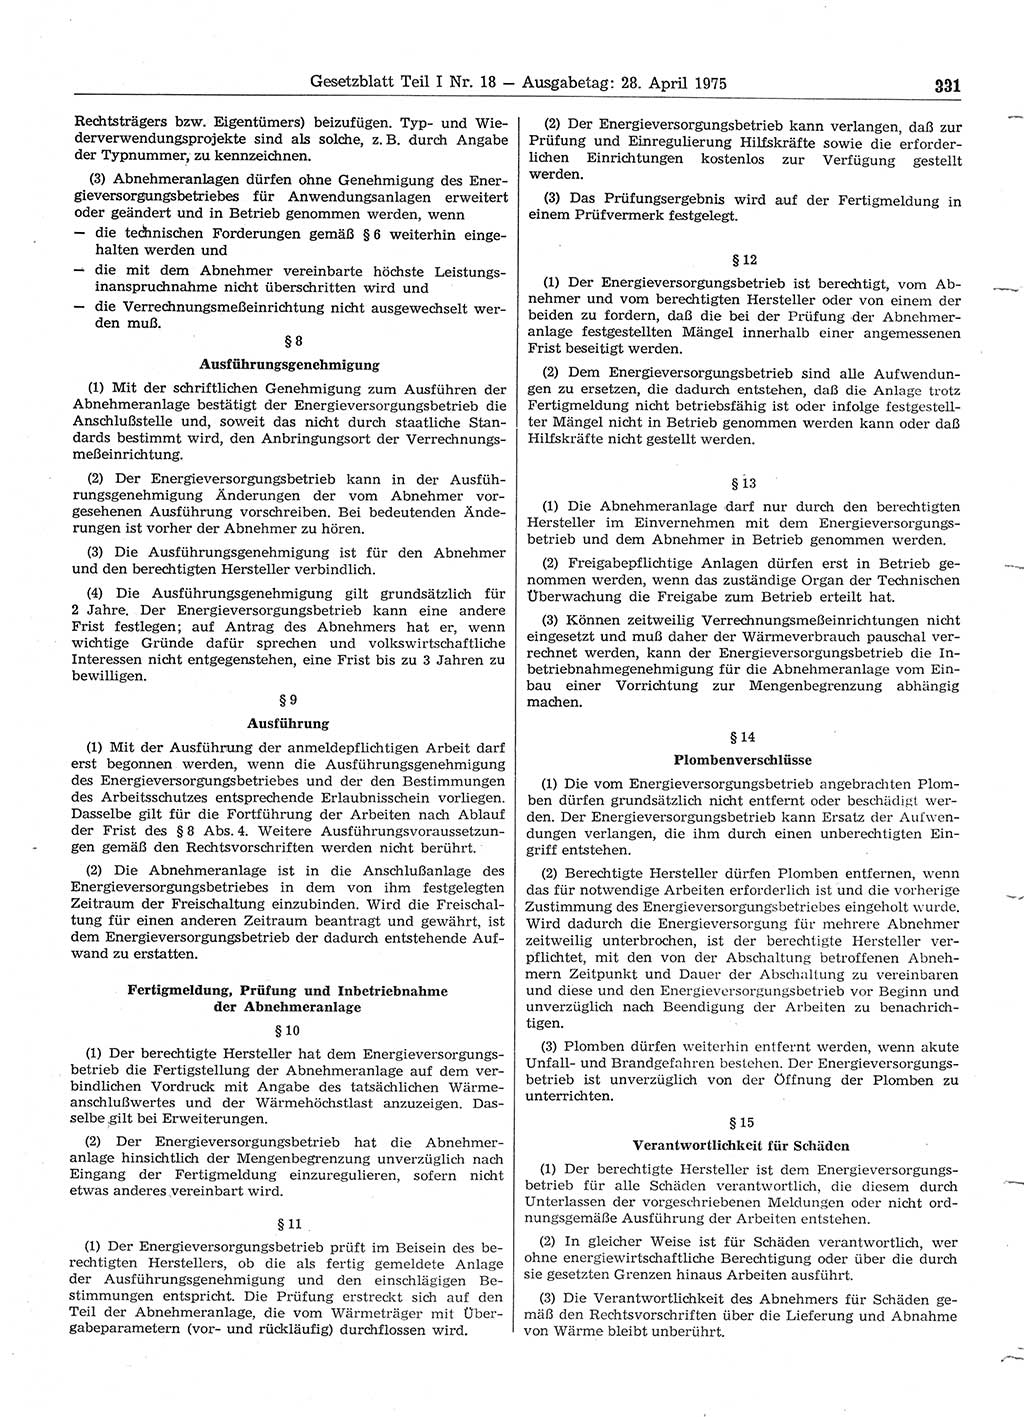 Gesetzblatt (GBl.) der Deutschen Demokratischen Republik (DDR) Teil Ⅰ 1975, Seite 331 (GBl. DDR Ⅰ 1975, S. 331)